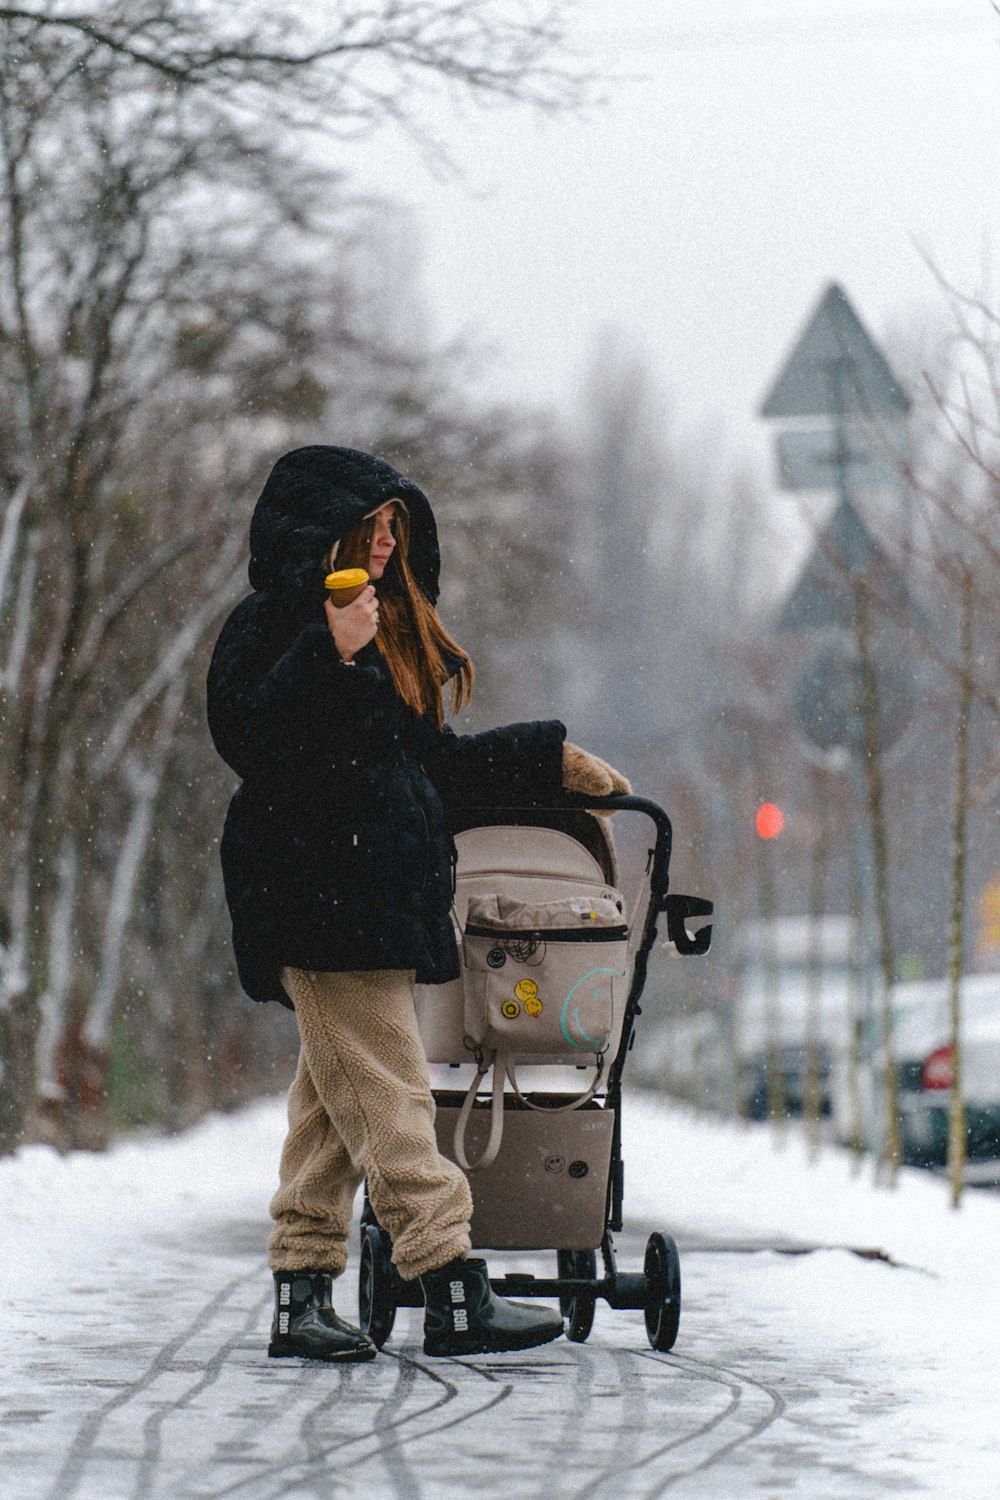 Eine Frau, die einen Kinderwagen eine schneebedeckte Straße hinunterschiebt